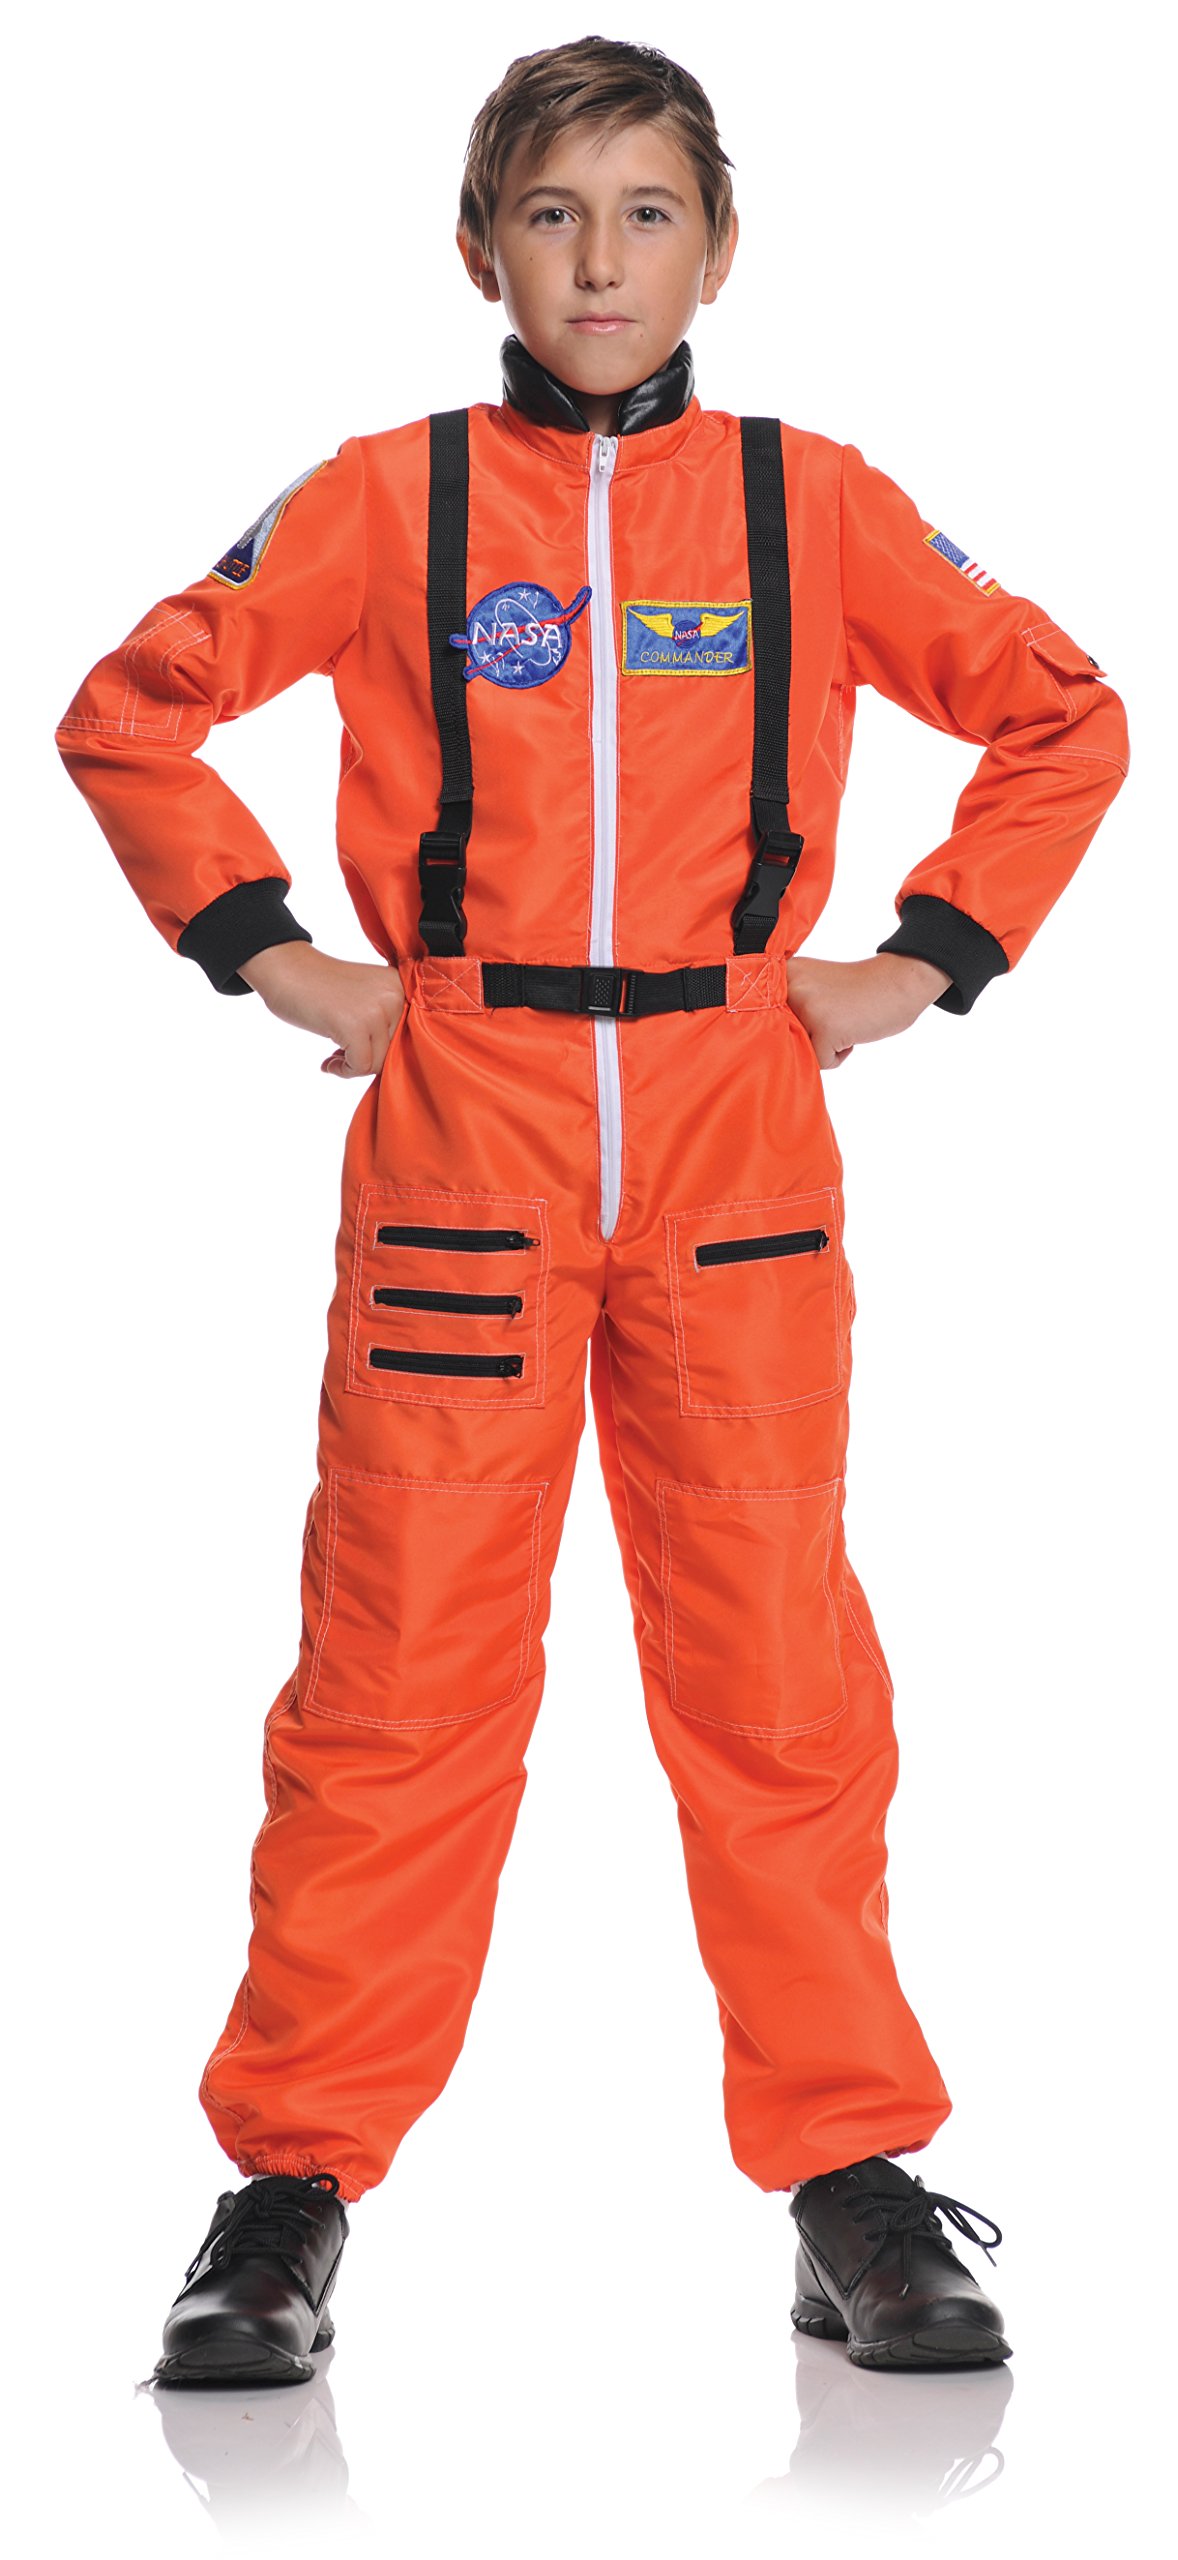 Underwraps Children's Astronaut Costume - Orange, Large (10-12)